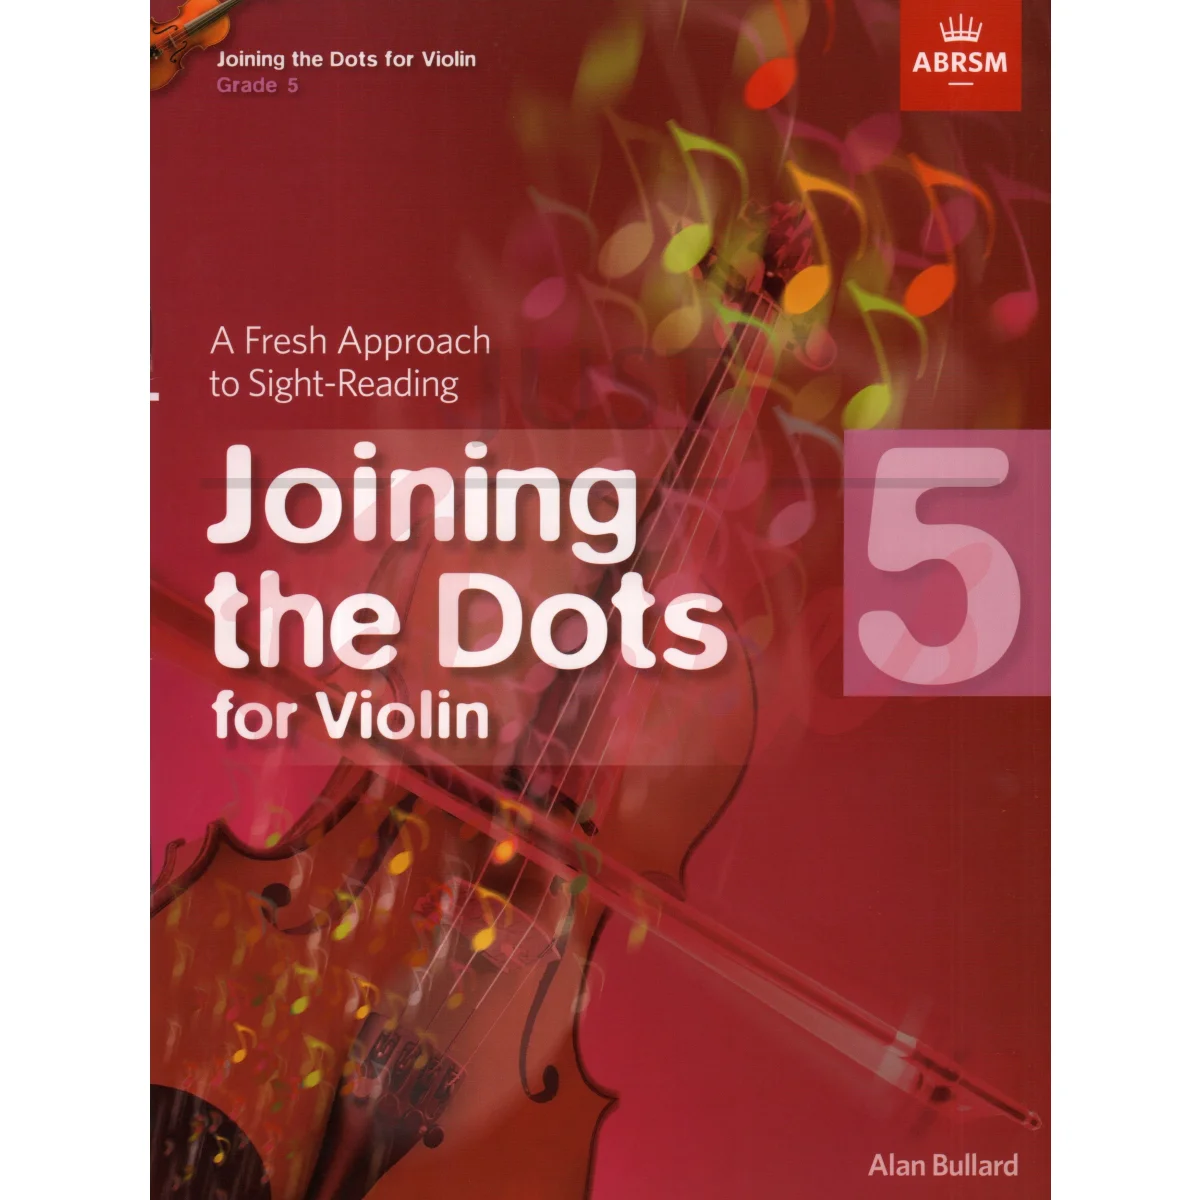 Joining the Dots Violin Grade 5